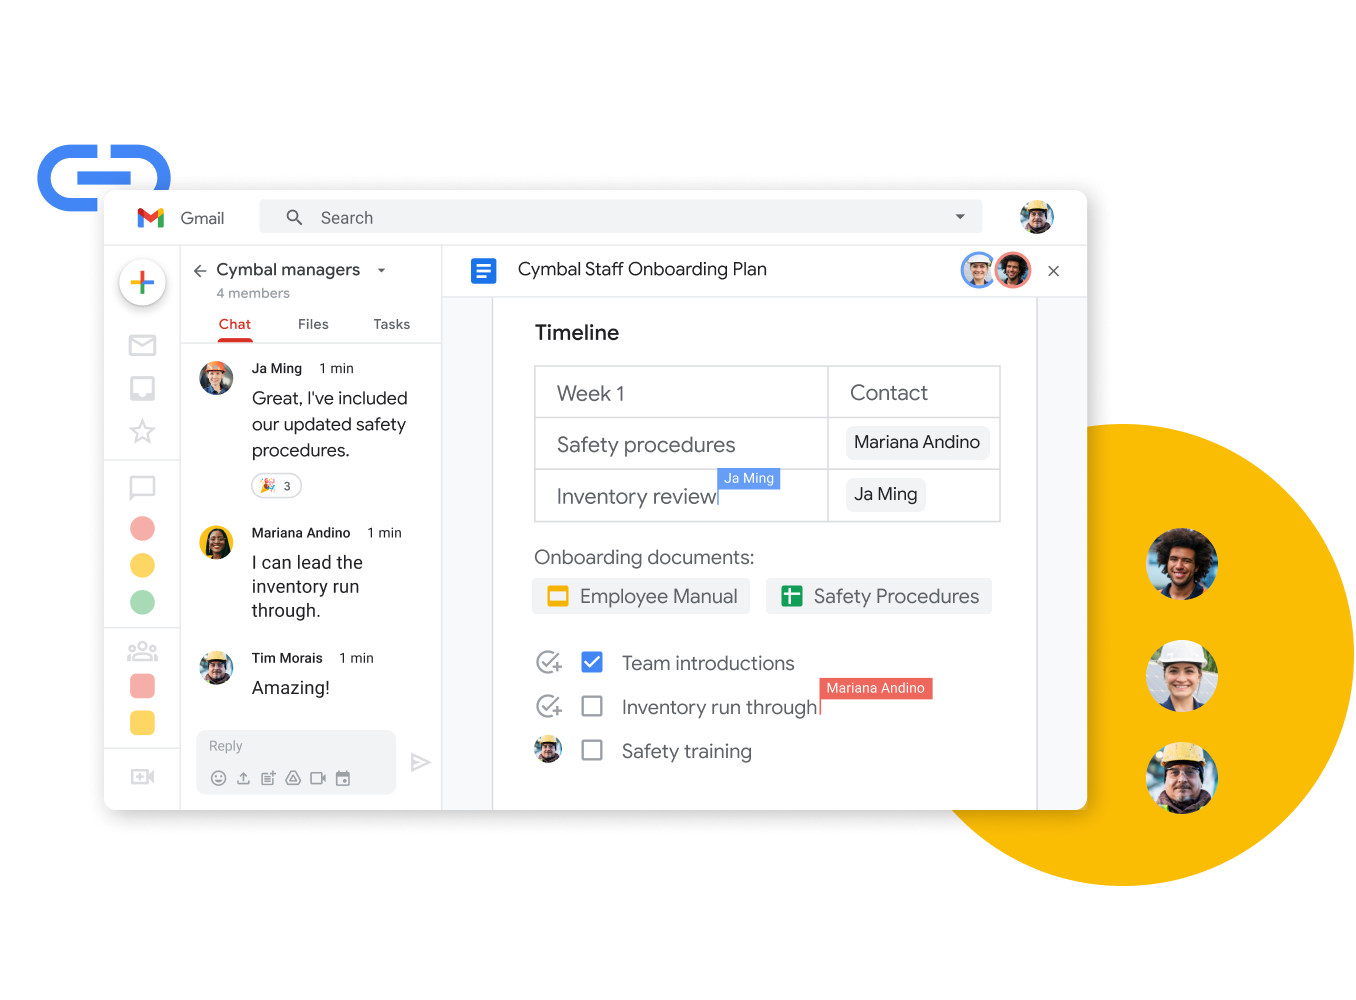 Grafik der Google Workspace-Oberfläche – Teammitglieder bearbeiten gemeinsam ein Dokument, während sie live chatten